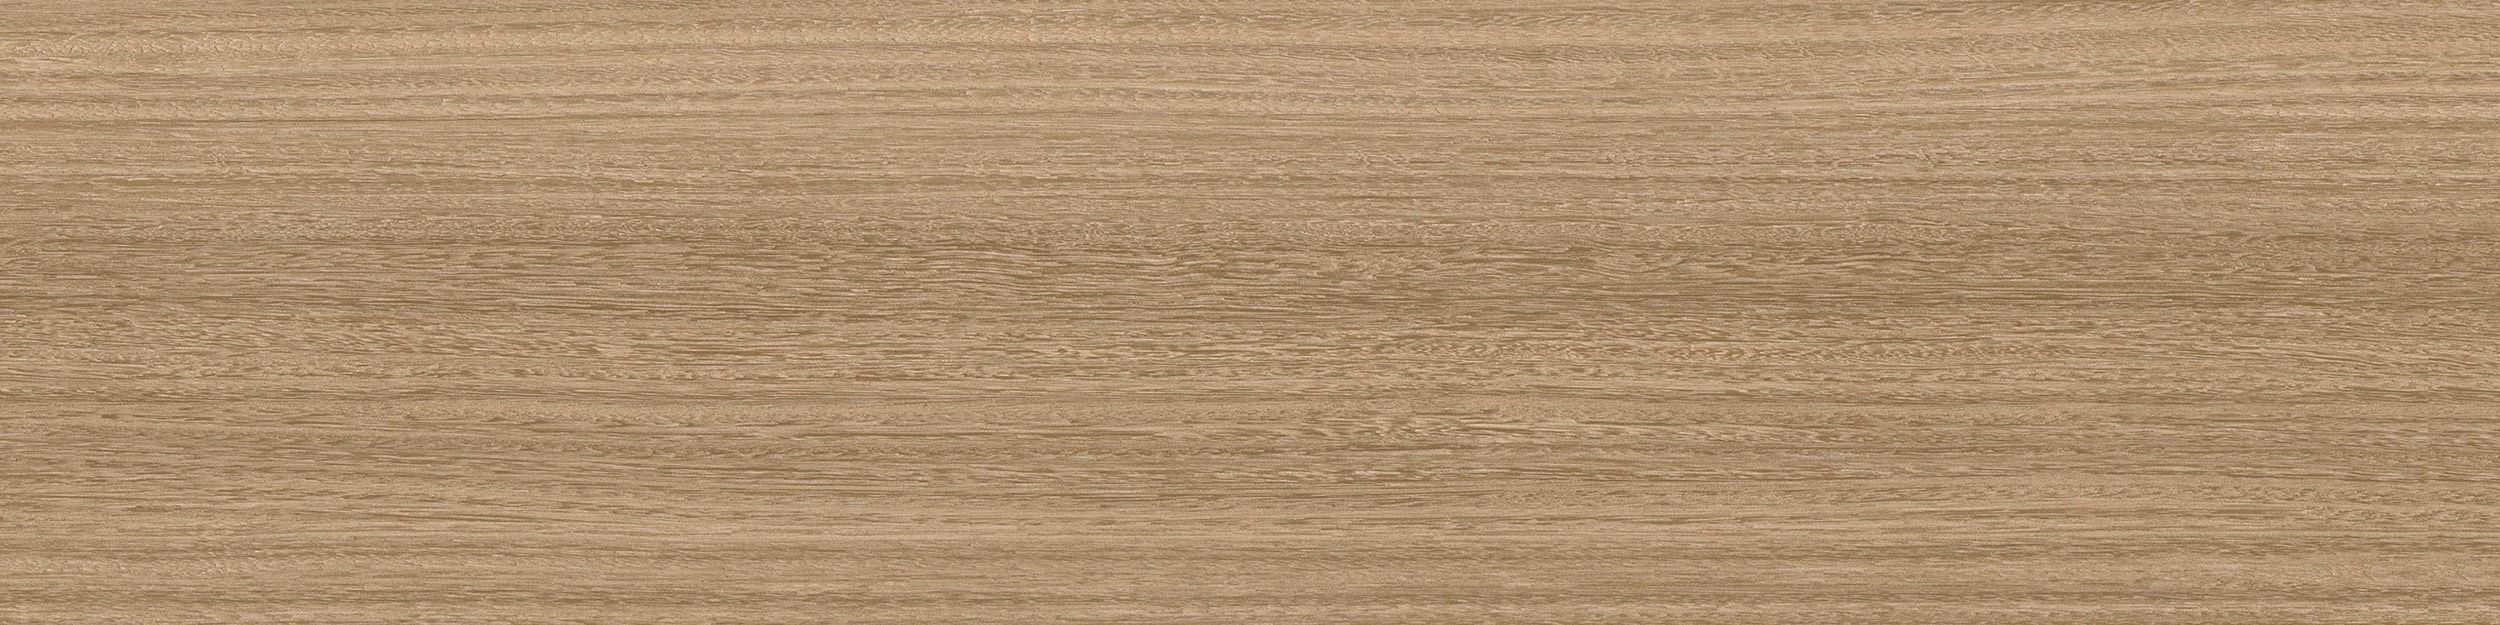 Textured Woodgrains LVT In Hemlock imagen número 1